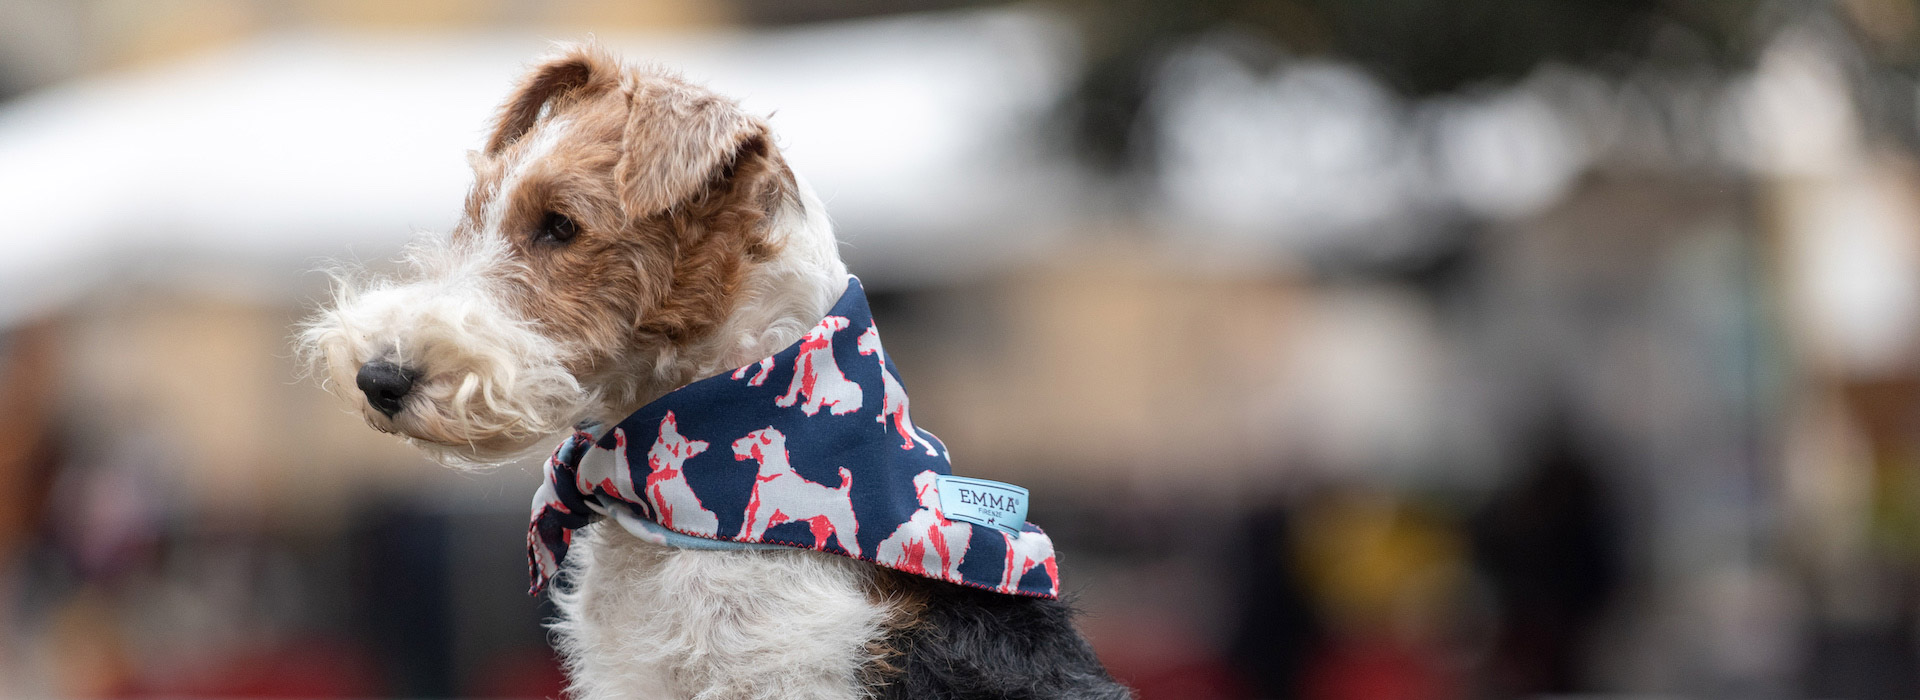 EmmaFirenze foulard per cani